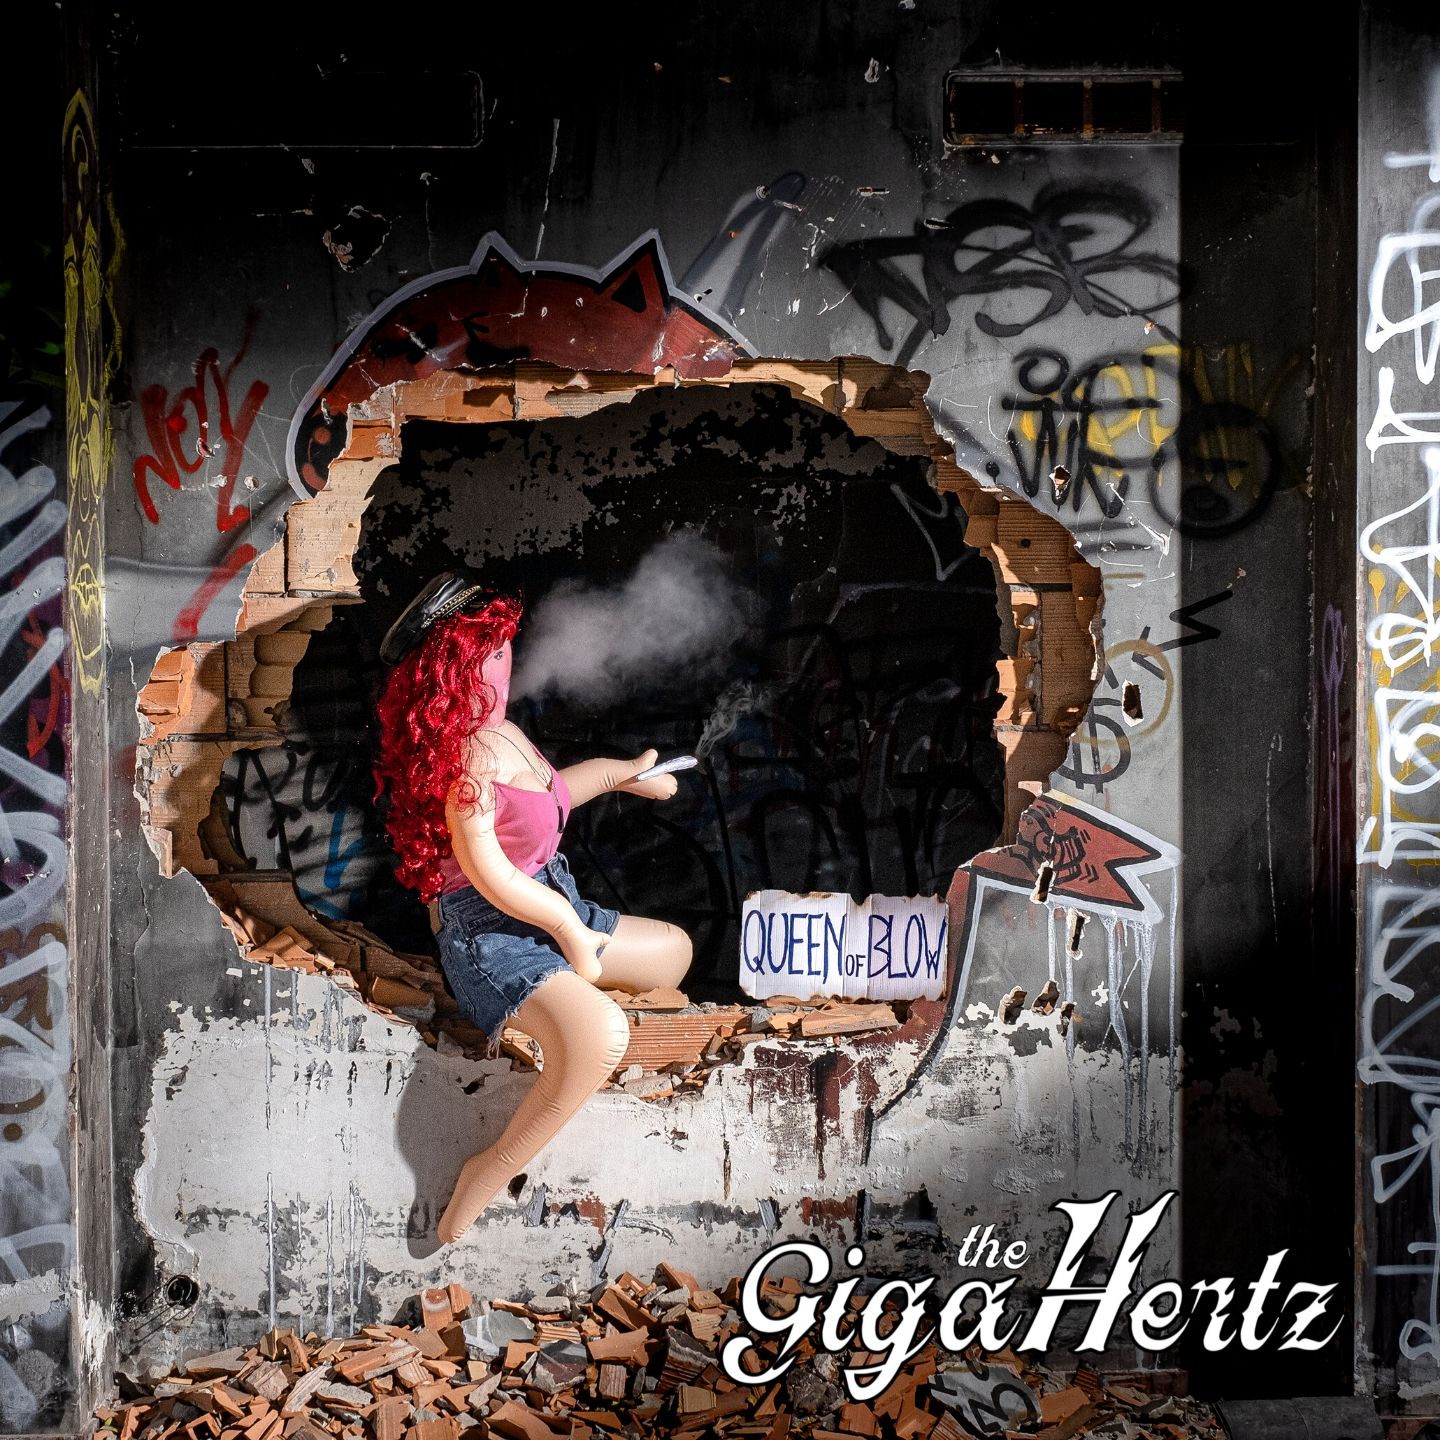 Foto 1 - Old School Rock e Bambole Gonfiabili. Esce Oggi l’album di debutto dei The GigaHertz “Queen of Blow”